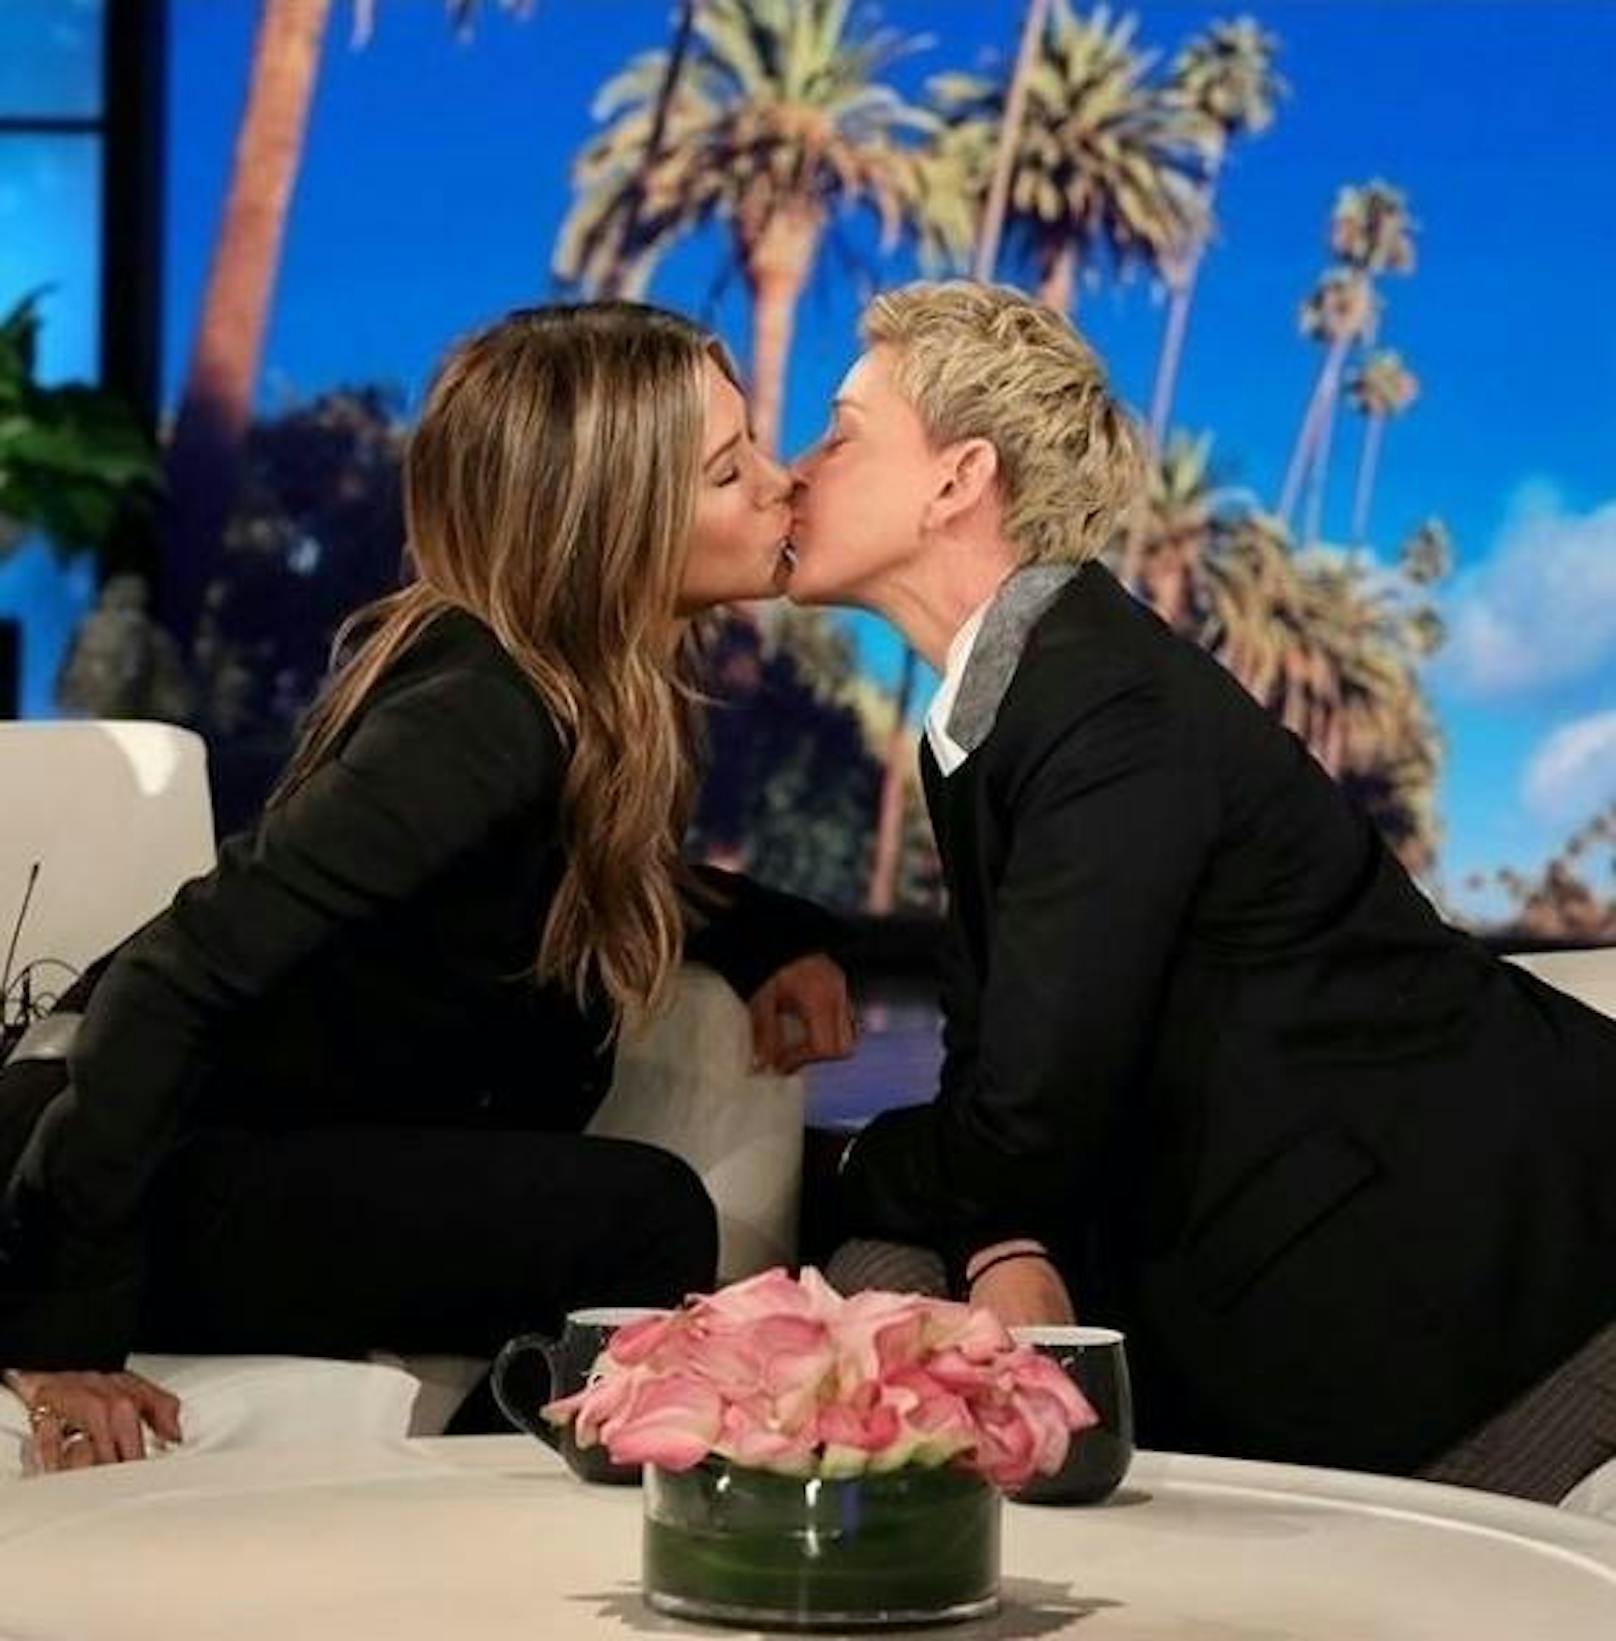 28.10.2019: In der "Ellen Show" von Ellen DeGeneres war Jennifer Aniston zu Gast. Zwischen den beiden schien es ordentlich gefunkt zu haben. Natürlich nur freundschaftlich! 